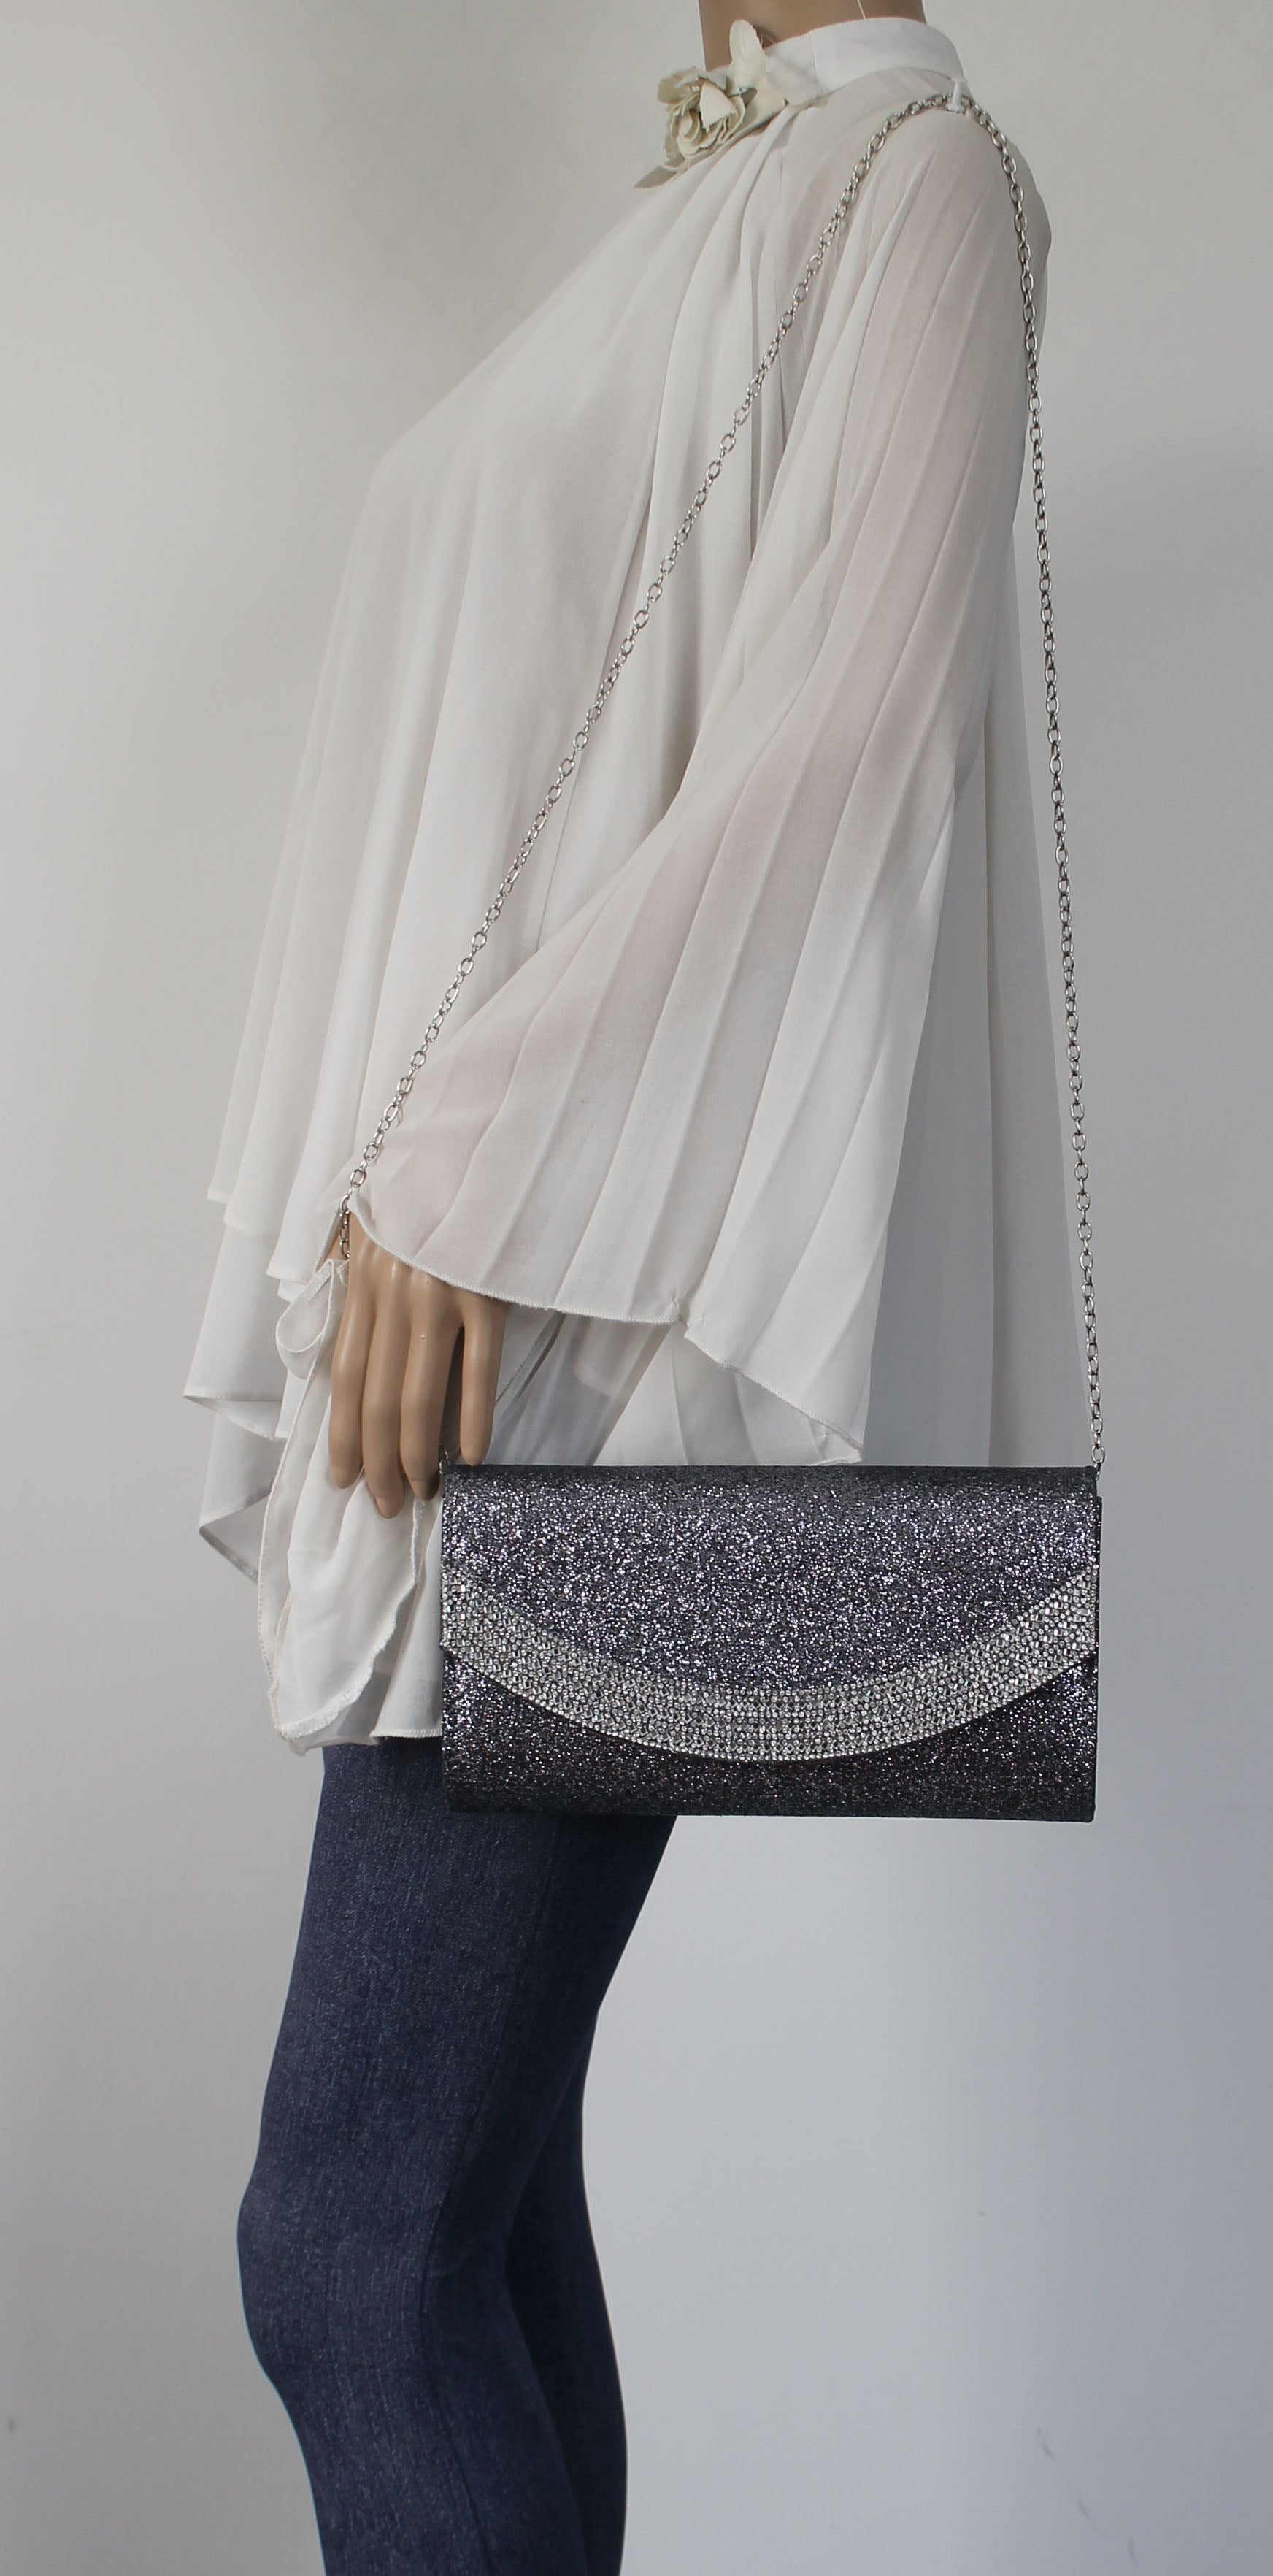 SWANKYSWANS Dakota Clutch Bag Grey Cute Cheap Clutch Bag For Weddings School and Work